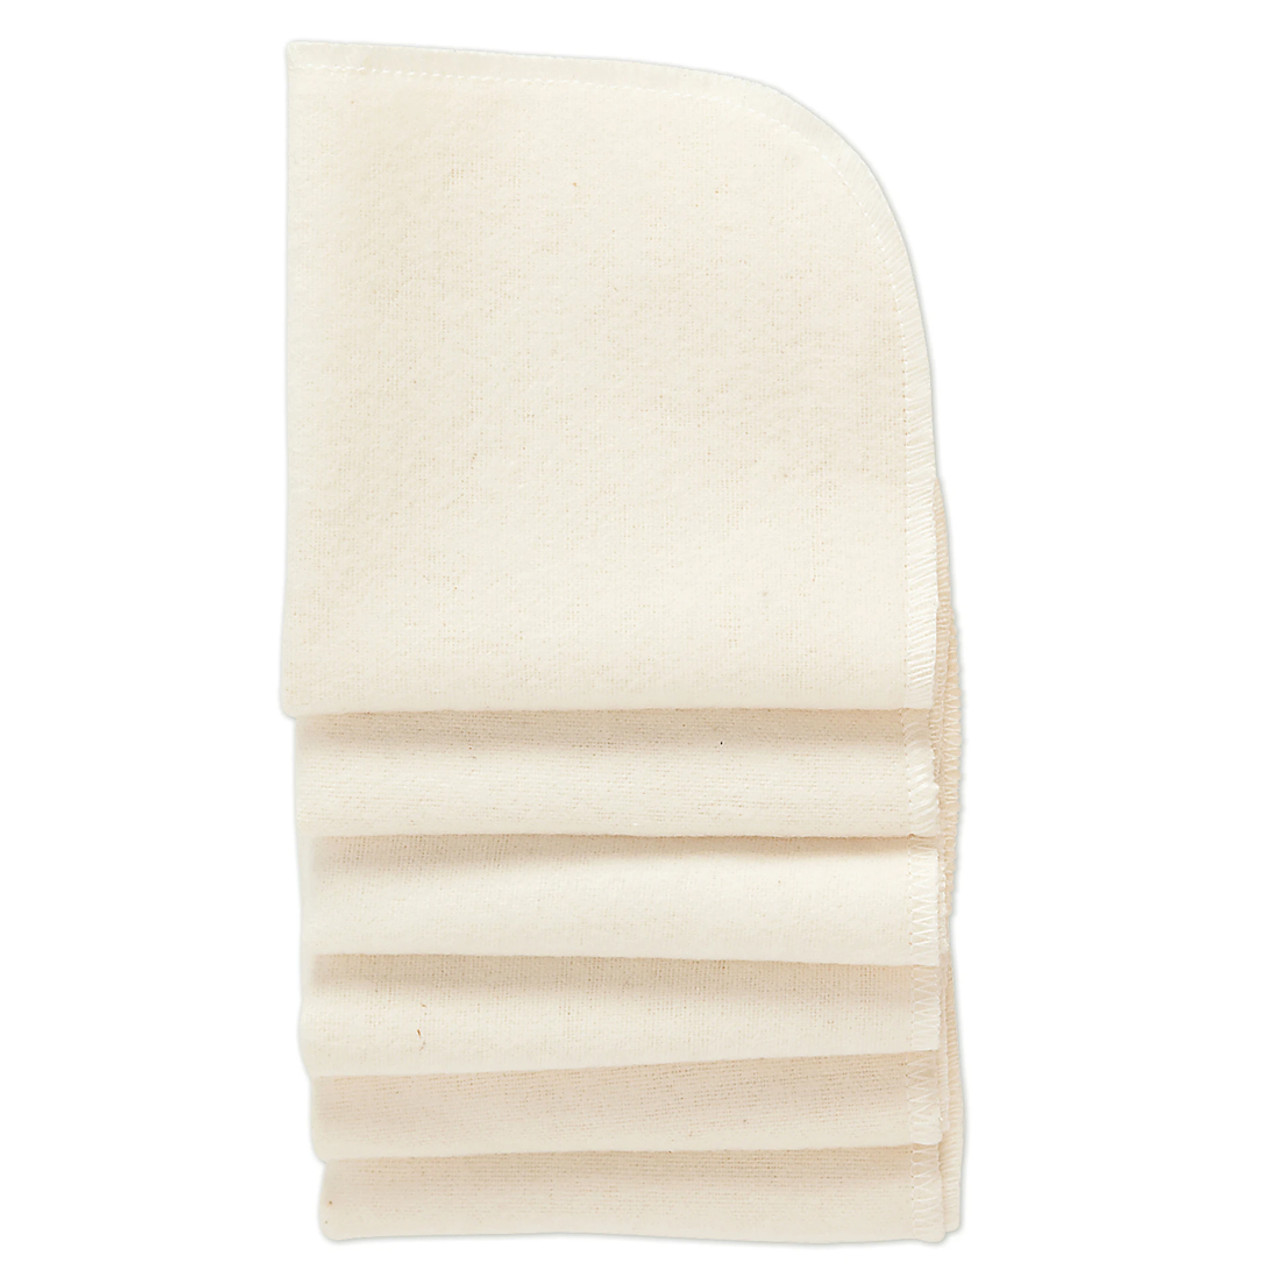 Nuangel Baby Washcloths in White | Cotton